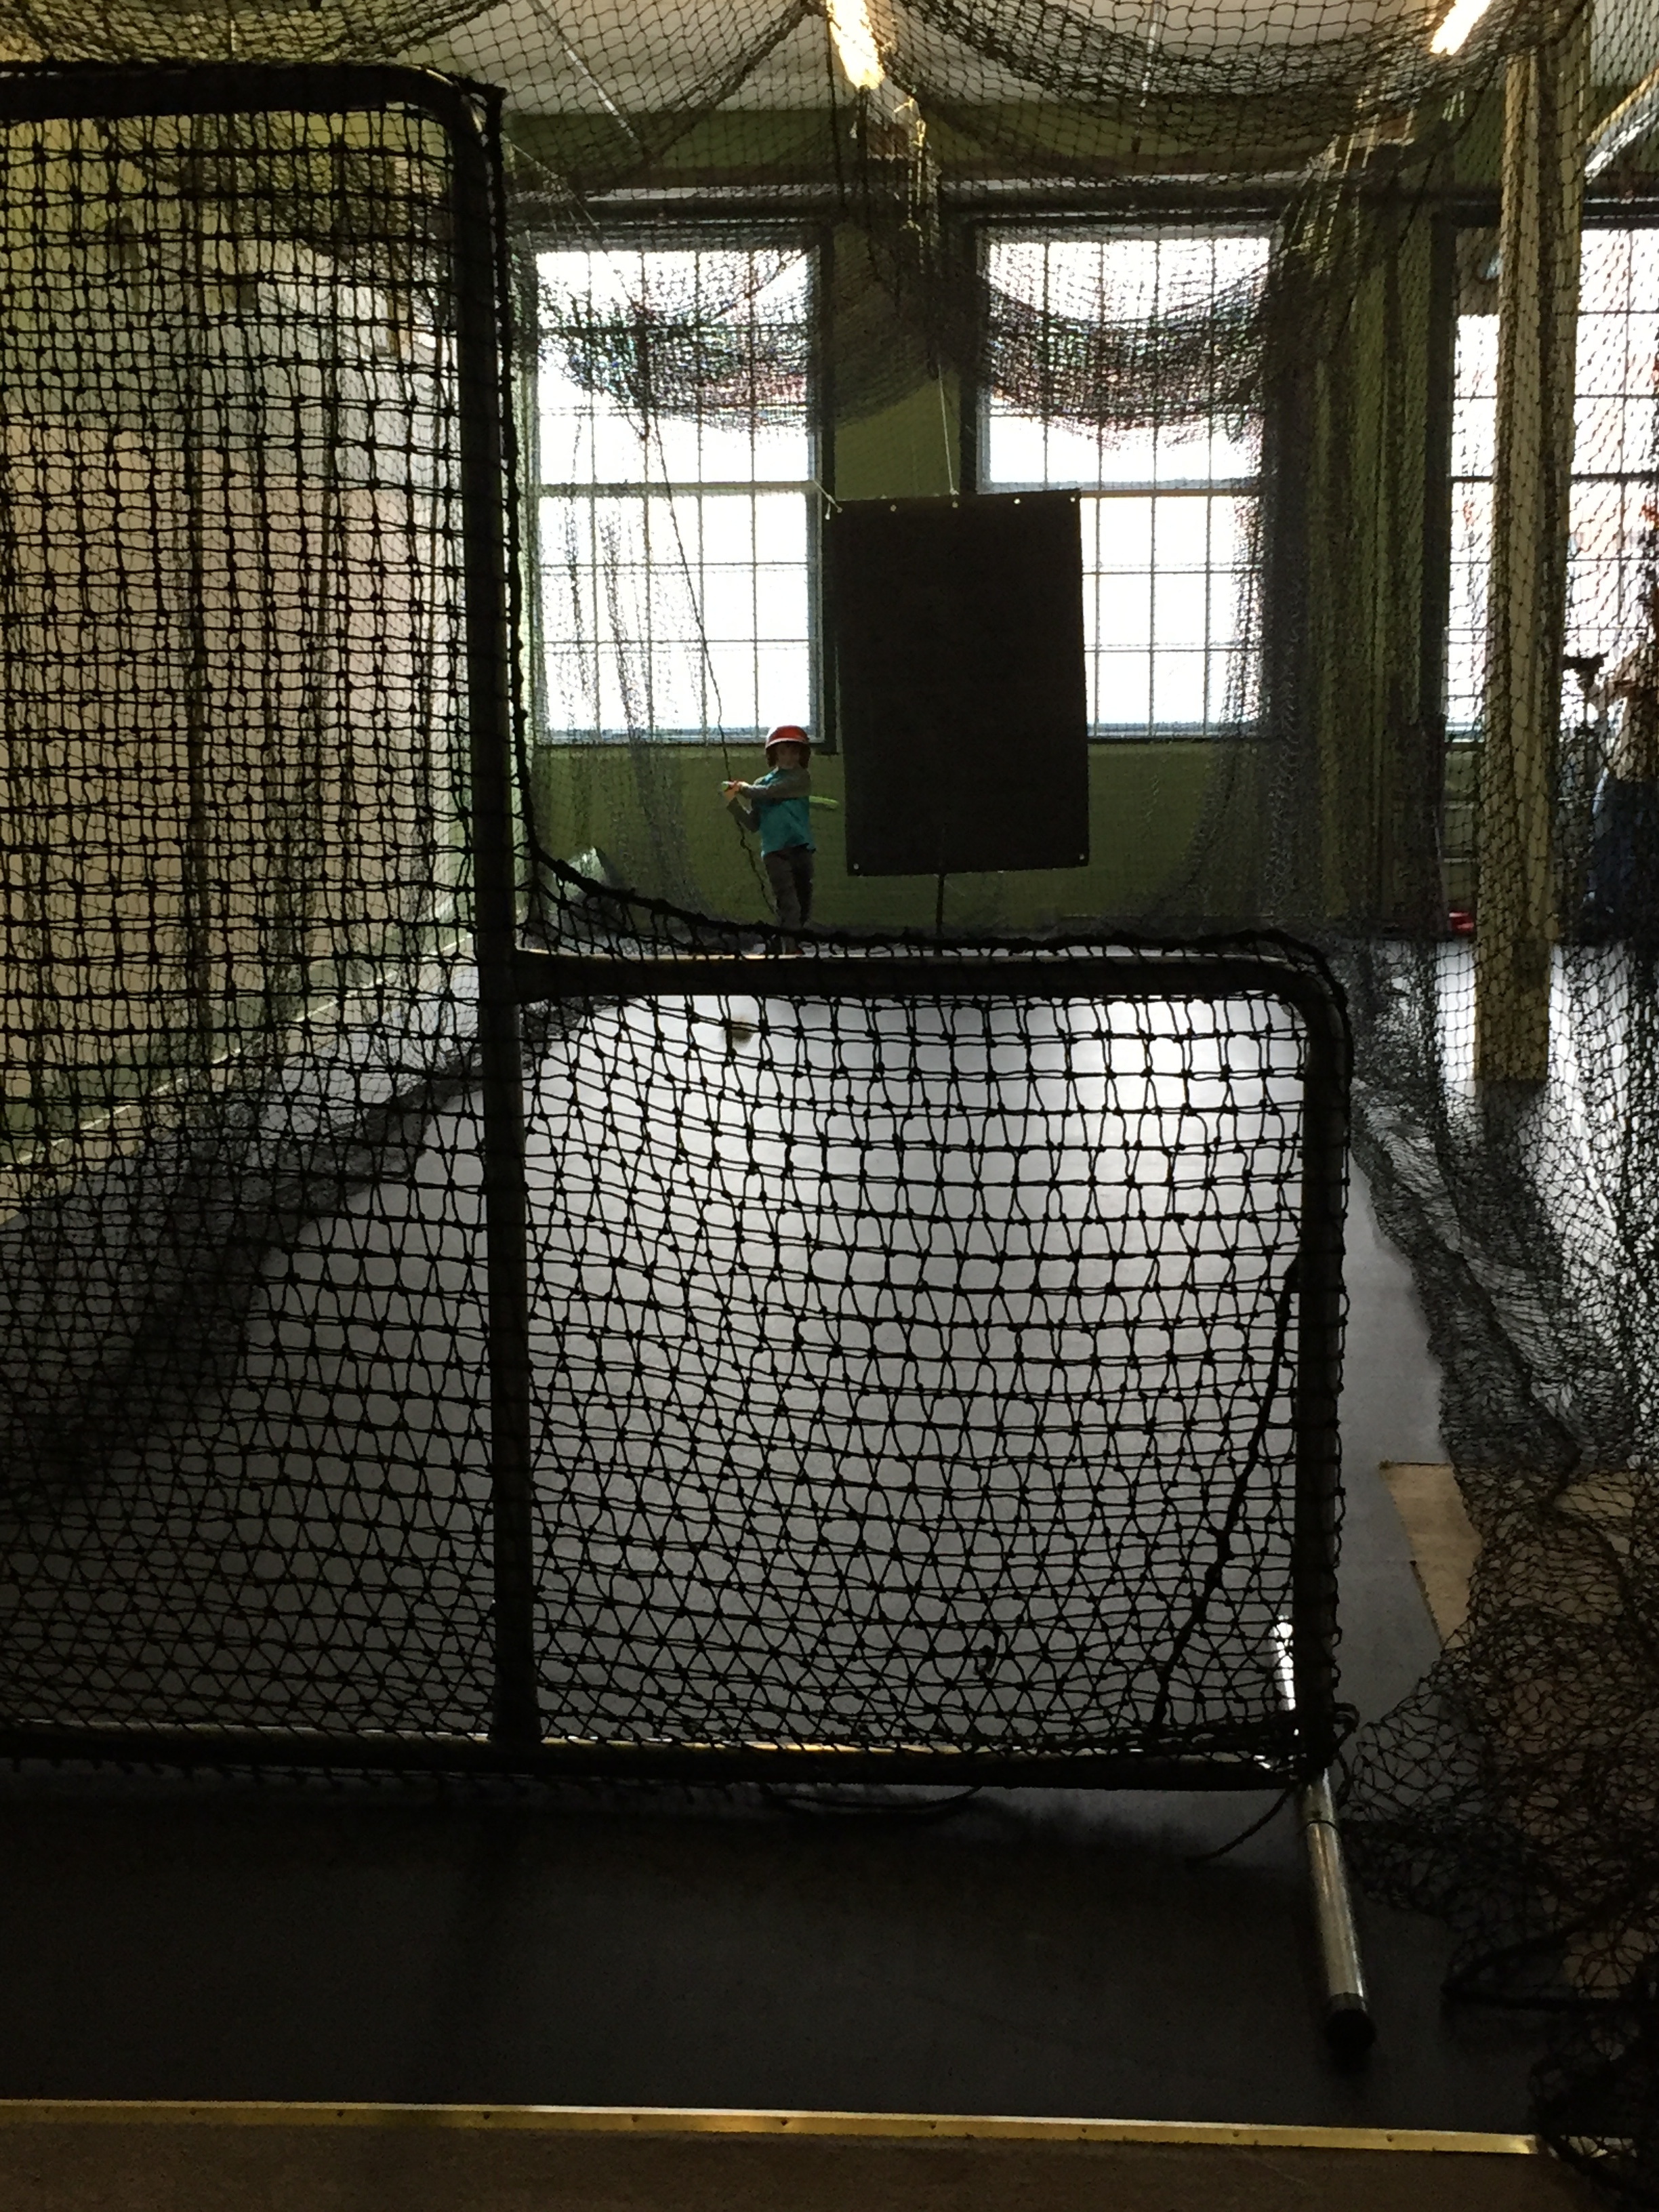  Batting cage 